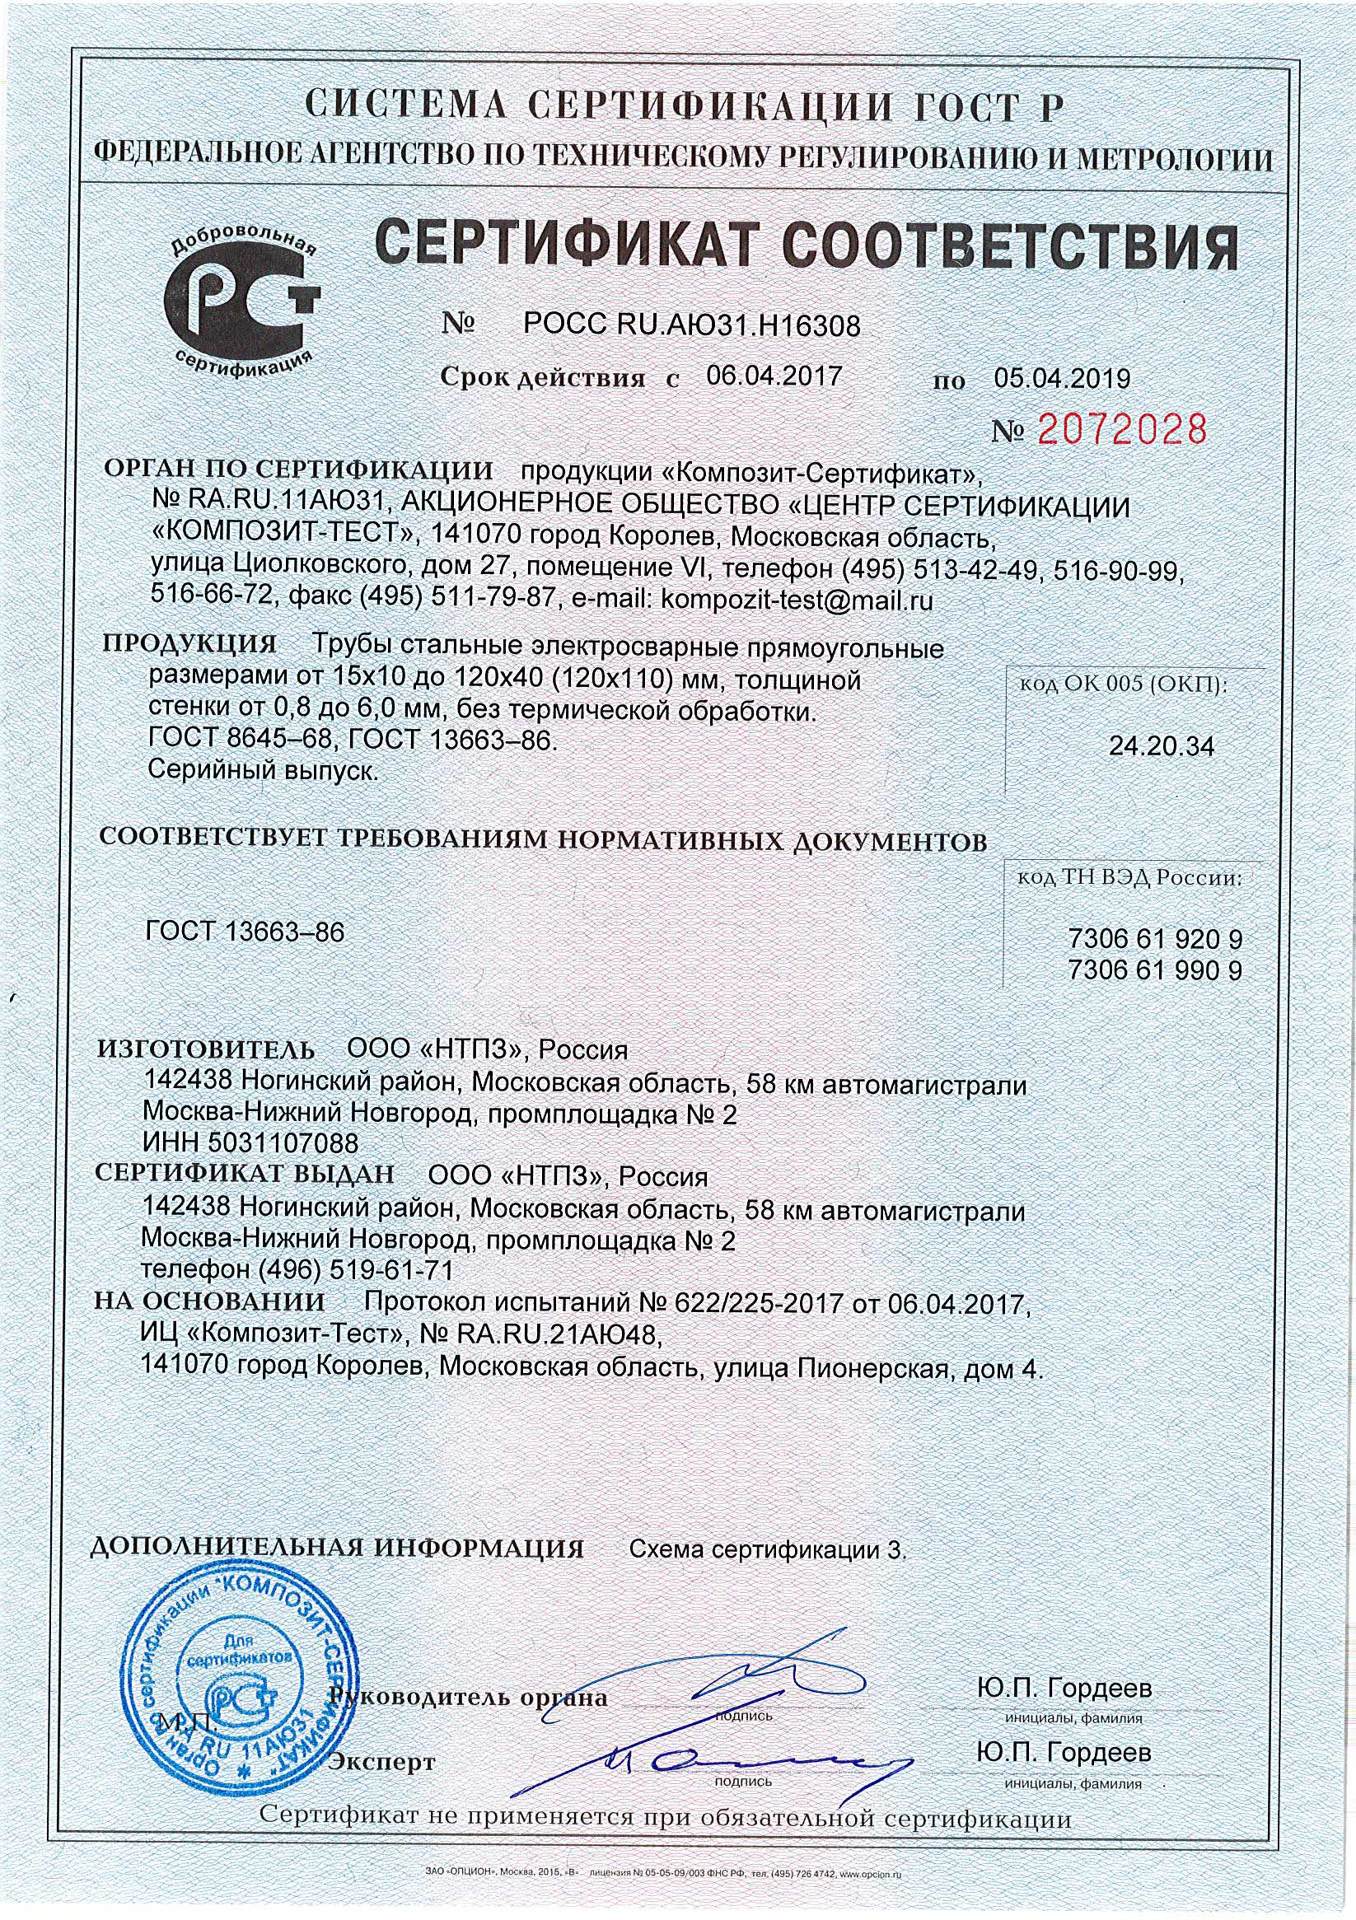 Сертификат соответствия квадратных труб ГОСТ 8645-68 производства НТПЗ